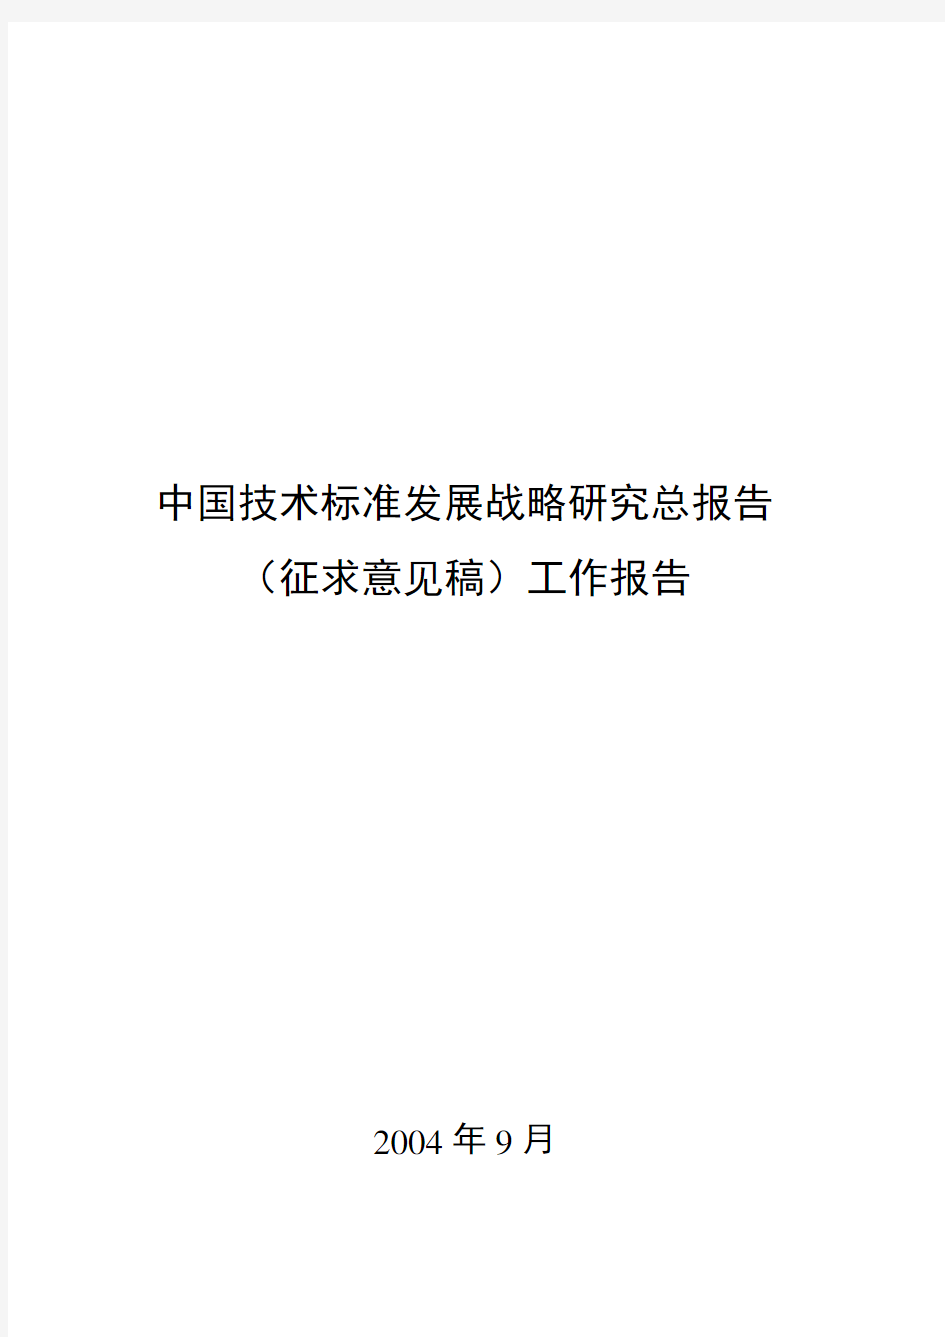 中国技术标准发展战略研究总报告